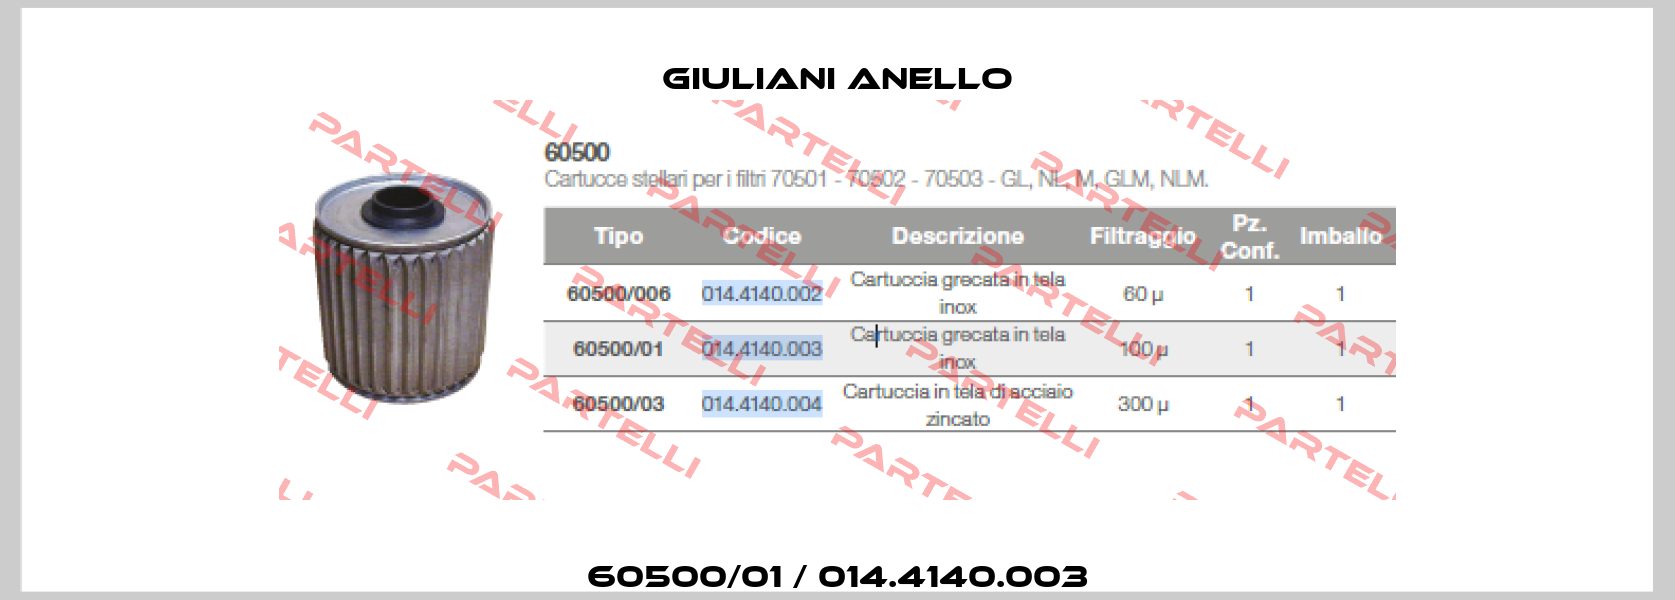 60500/01 / 014.4140.003 Giuliani Anello